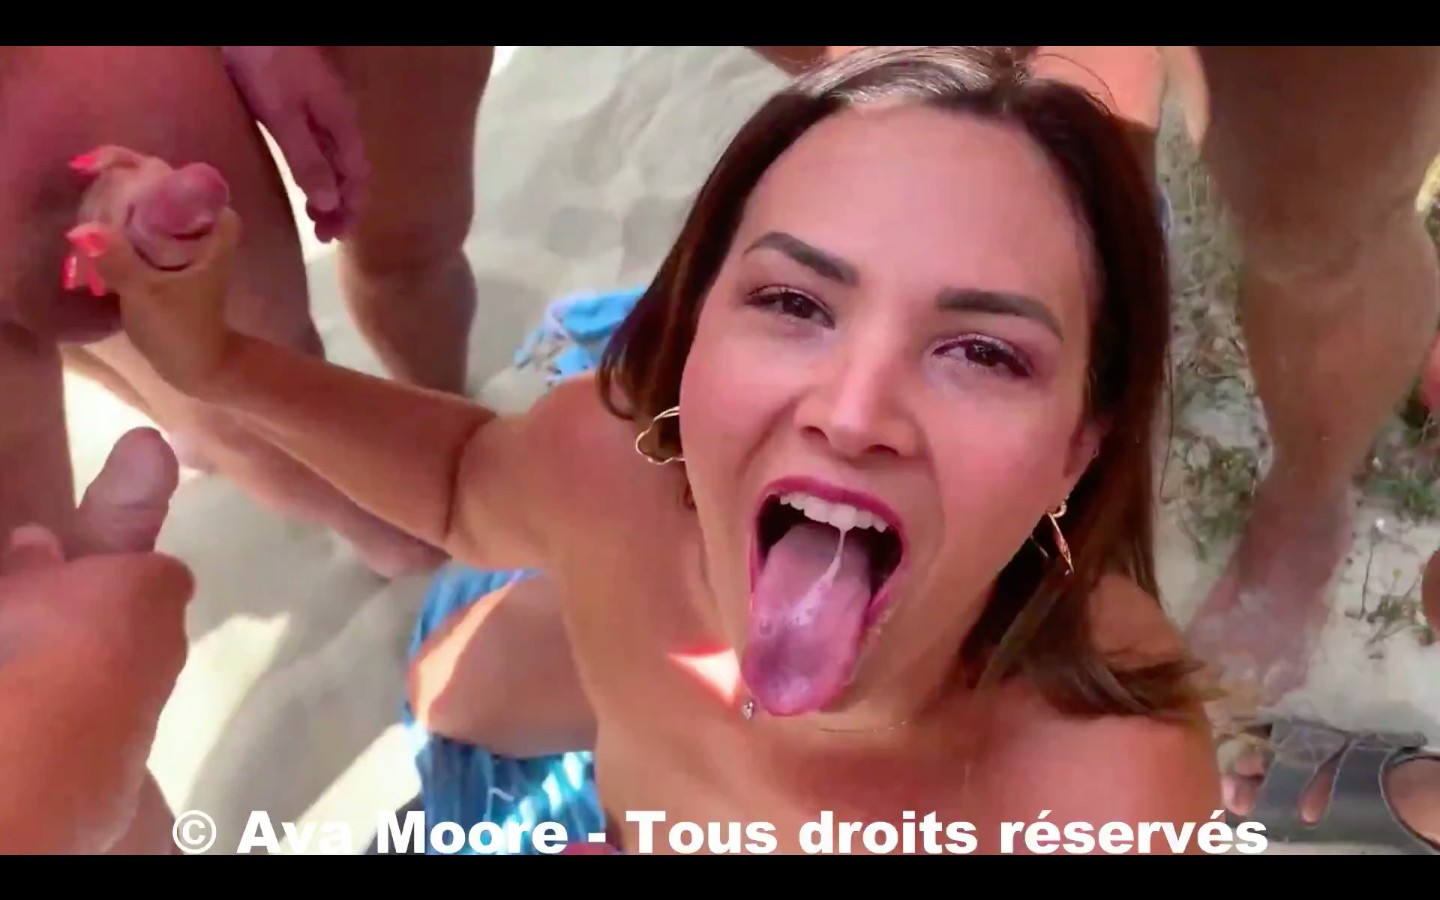 Ava Moore filme une vidéo de porno réalité sur la plage libertine du Cap d'Agde, la baie des cochons